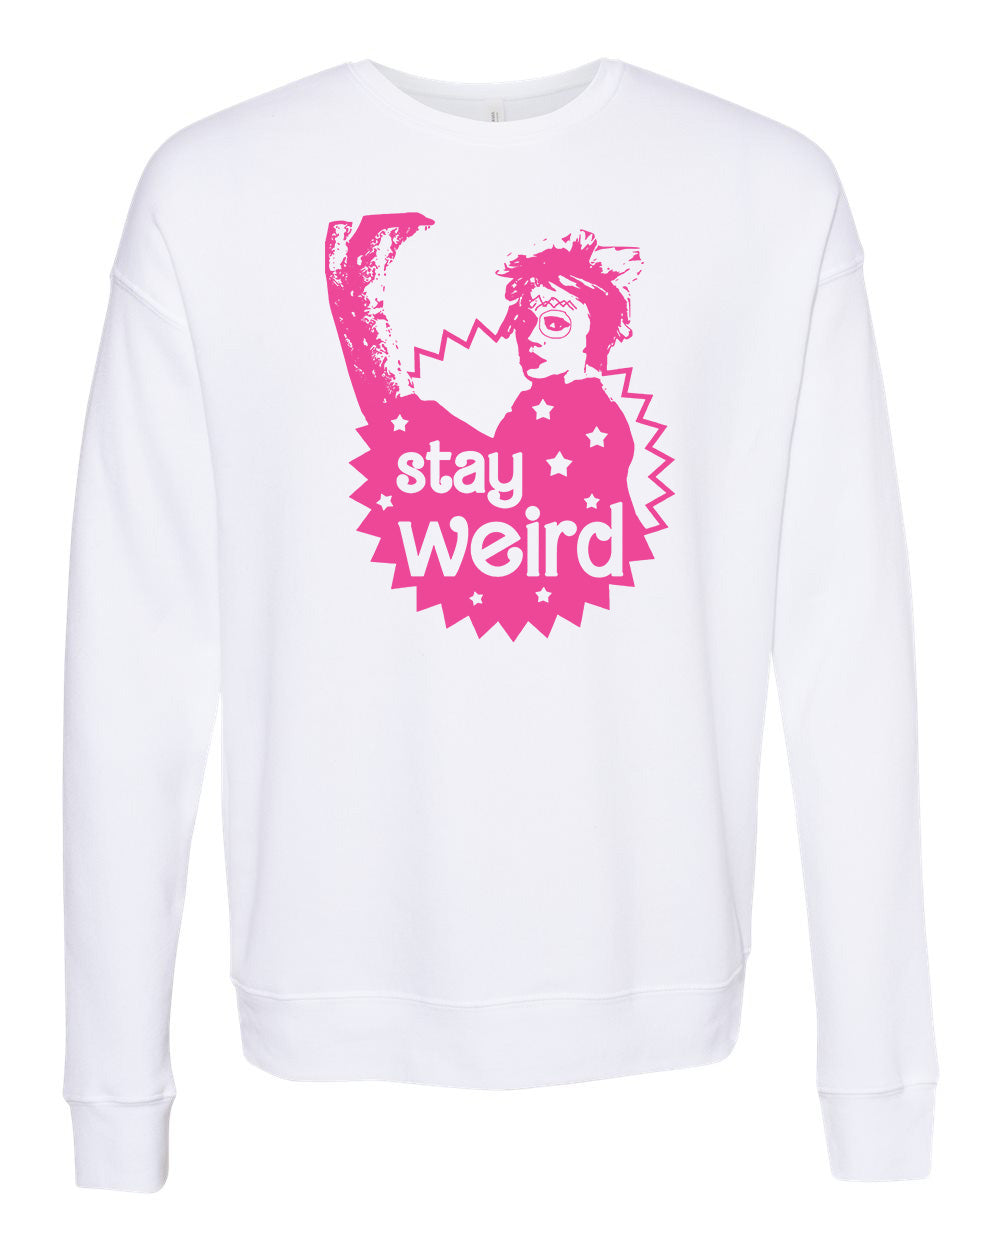 Stay Weird - Unisex Sweatshirt - White with Pink Ink